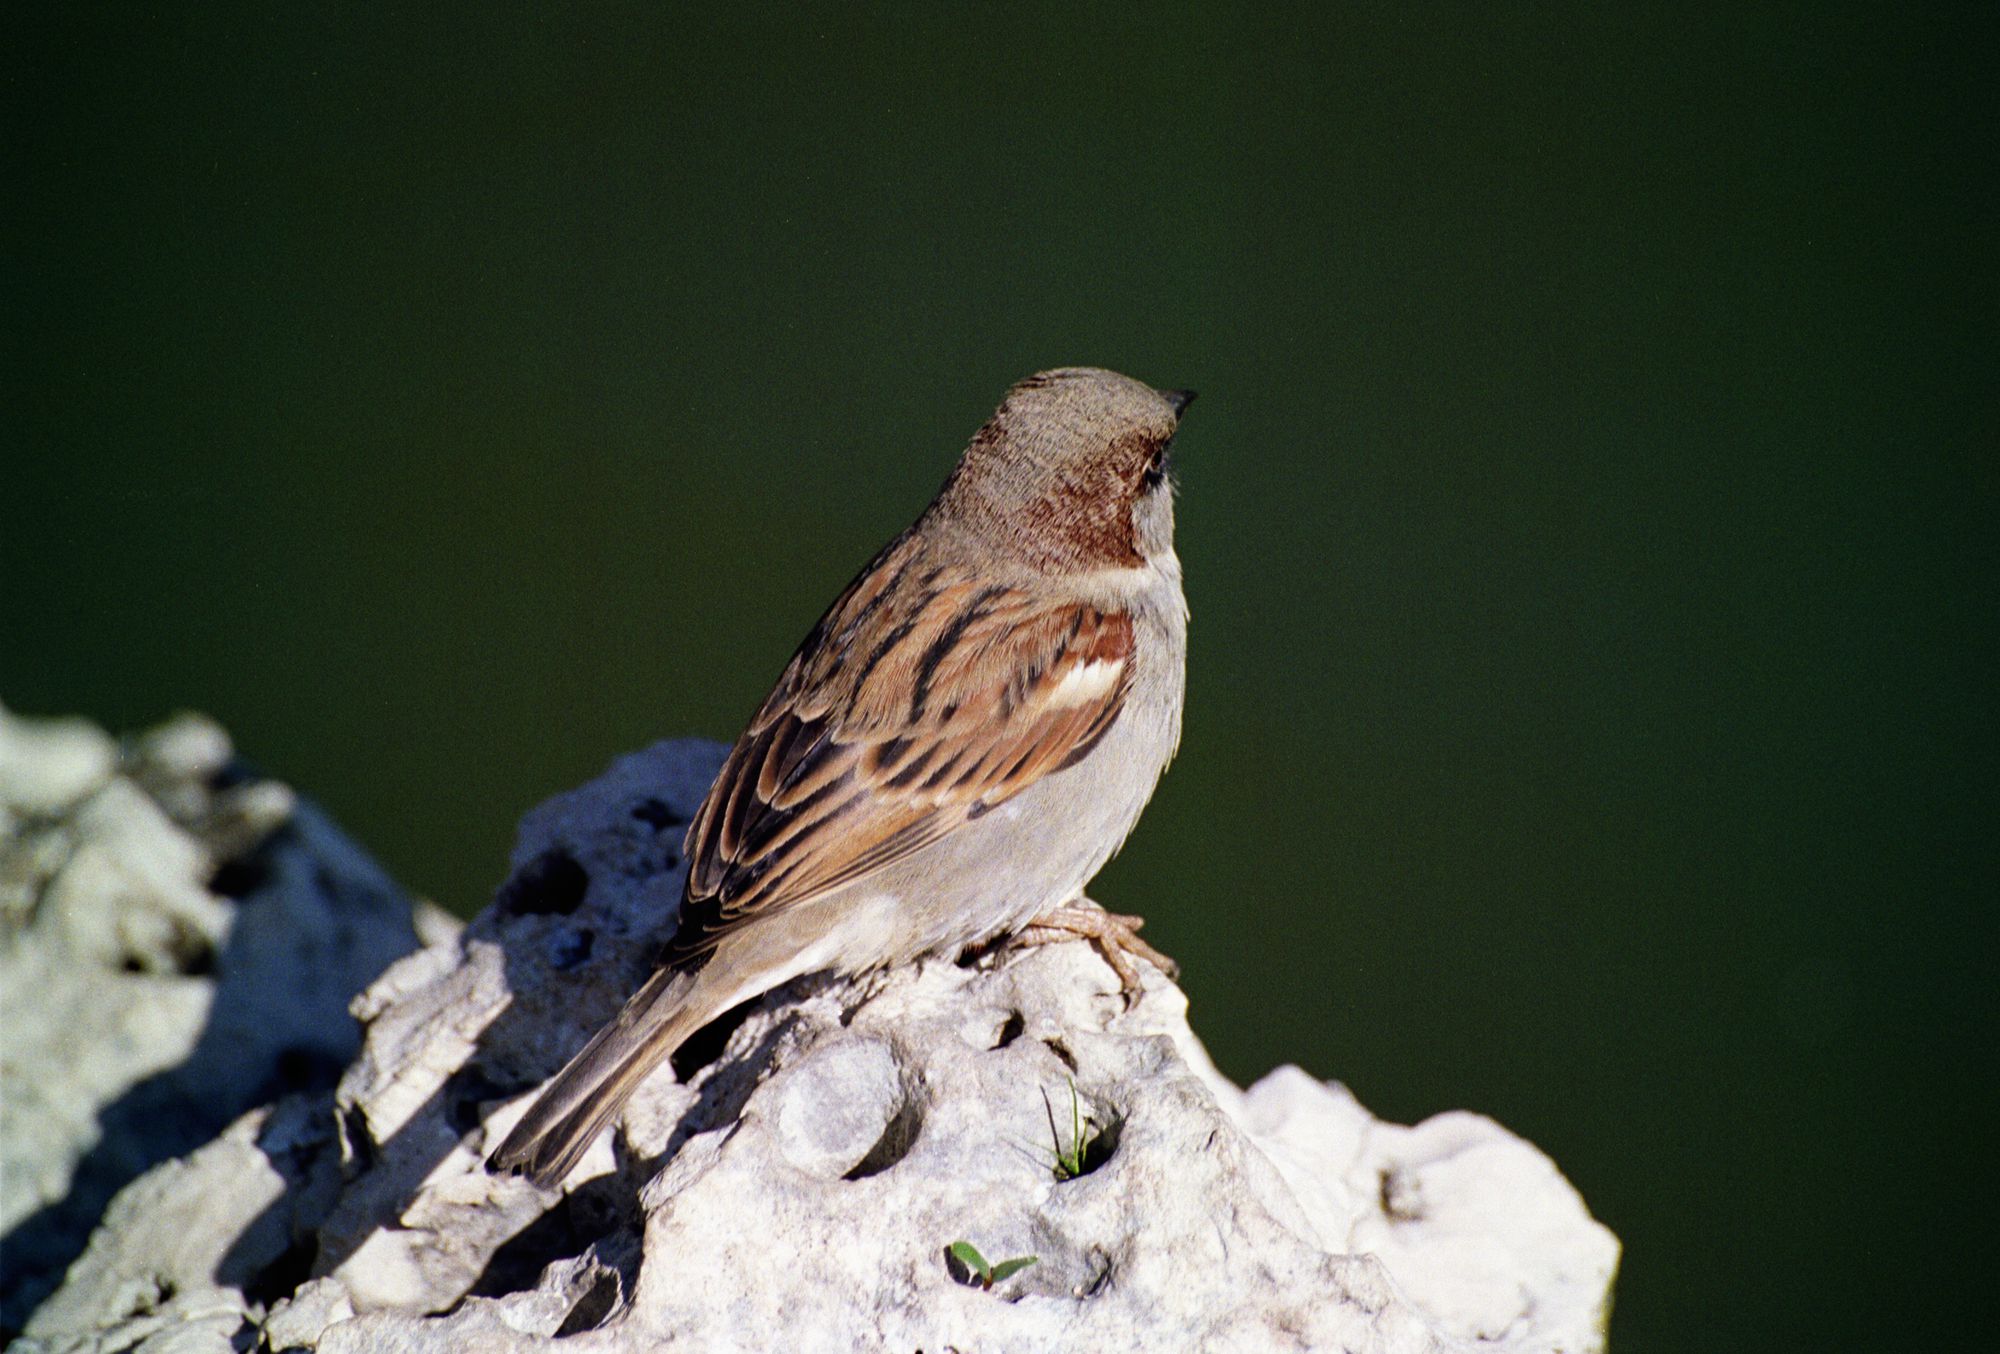 Bird at the Palacio de Cristal